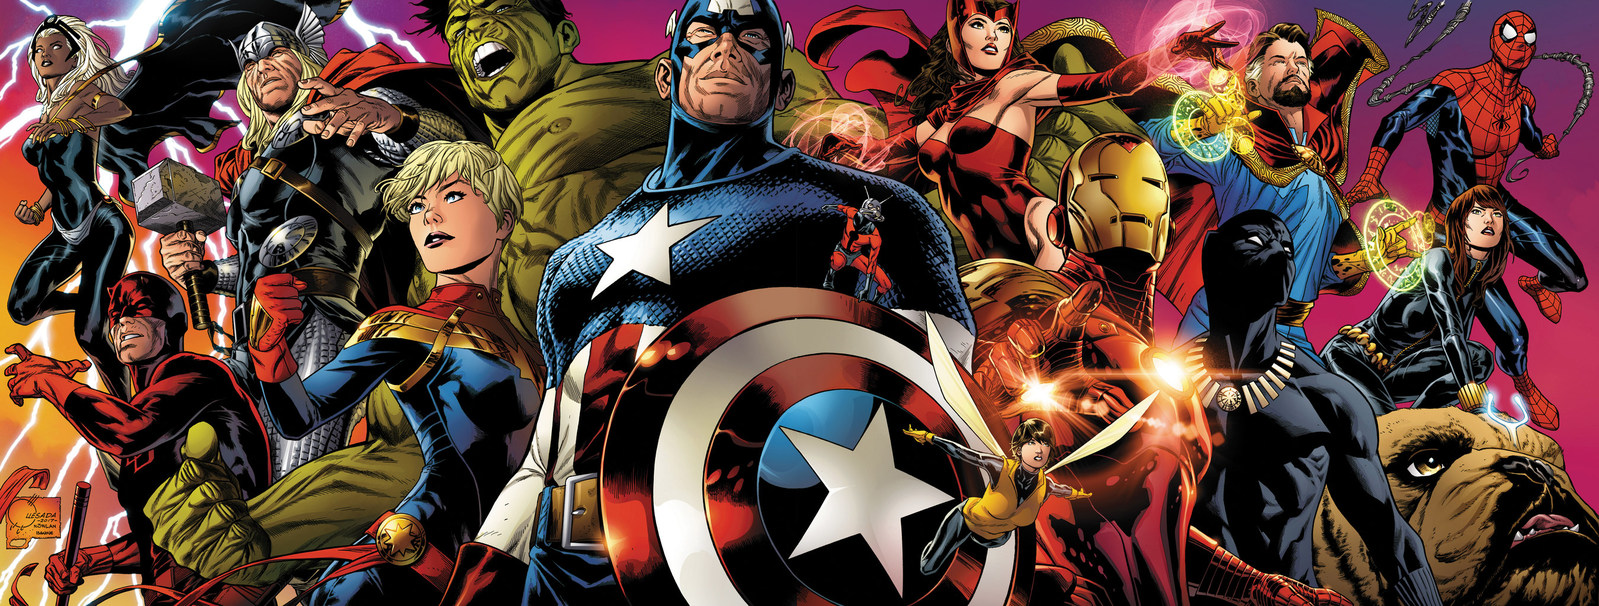 Marvel Entertainment Super Heroes arrive on hoopla digital